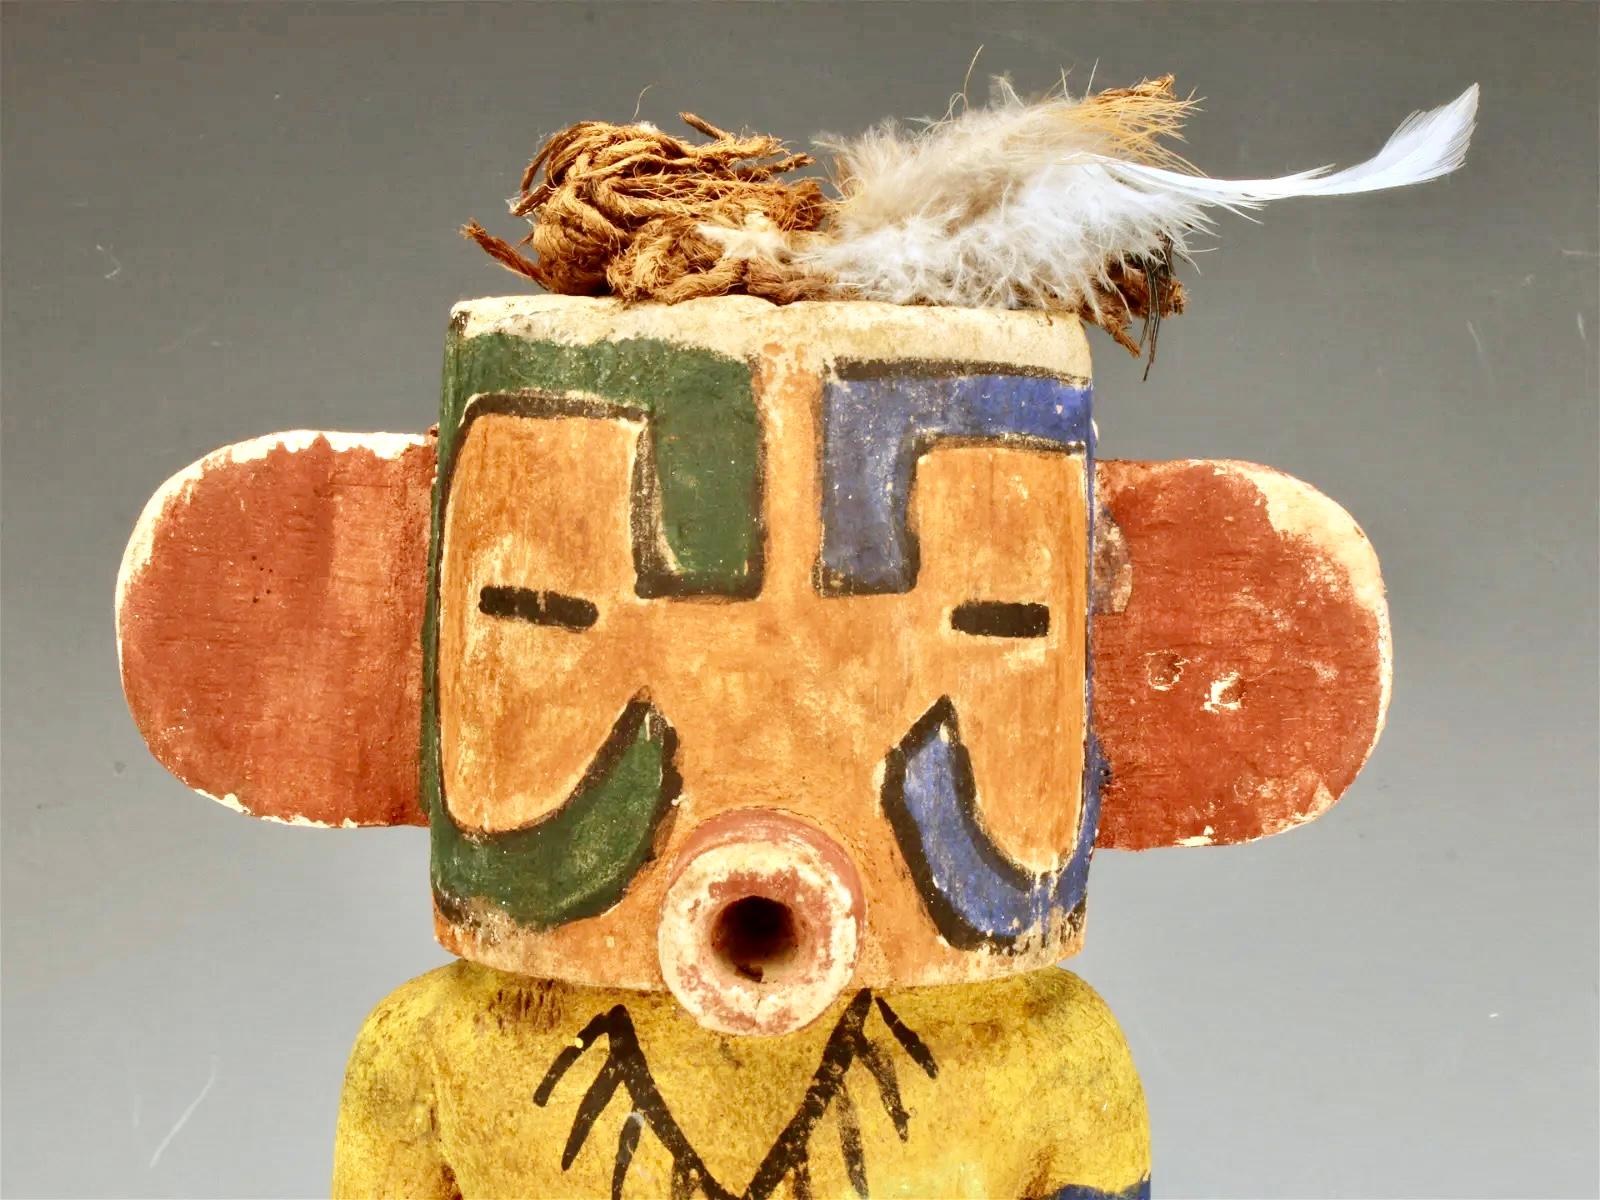 Les figurines Hopi katsina (langue Hopi : tithu ou katsintithu), également connues sous le nom de poupées kachina, sont des figurines sculptées, généralement dans une racine de peuplier, par les Hopis pour instruire les jeunes filles et les